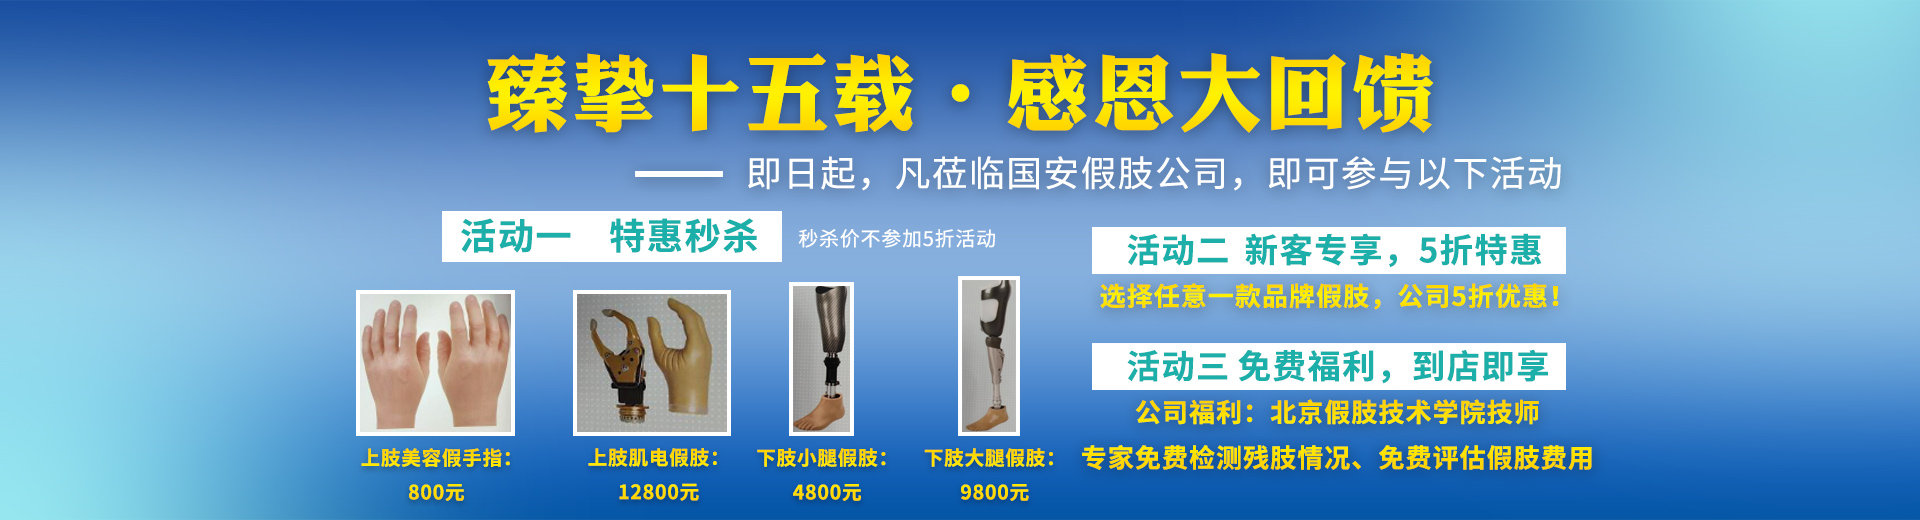 长沙国安假肢康复用品有限公司_长沙假肢用品|国安假肢康复用品|假肢矫形器